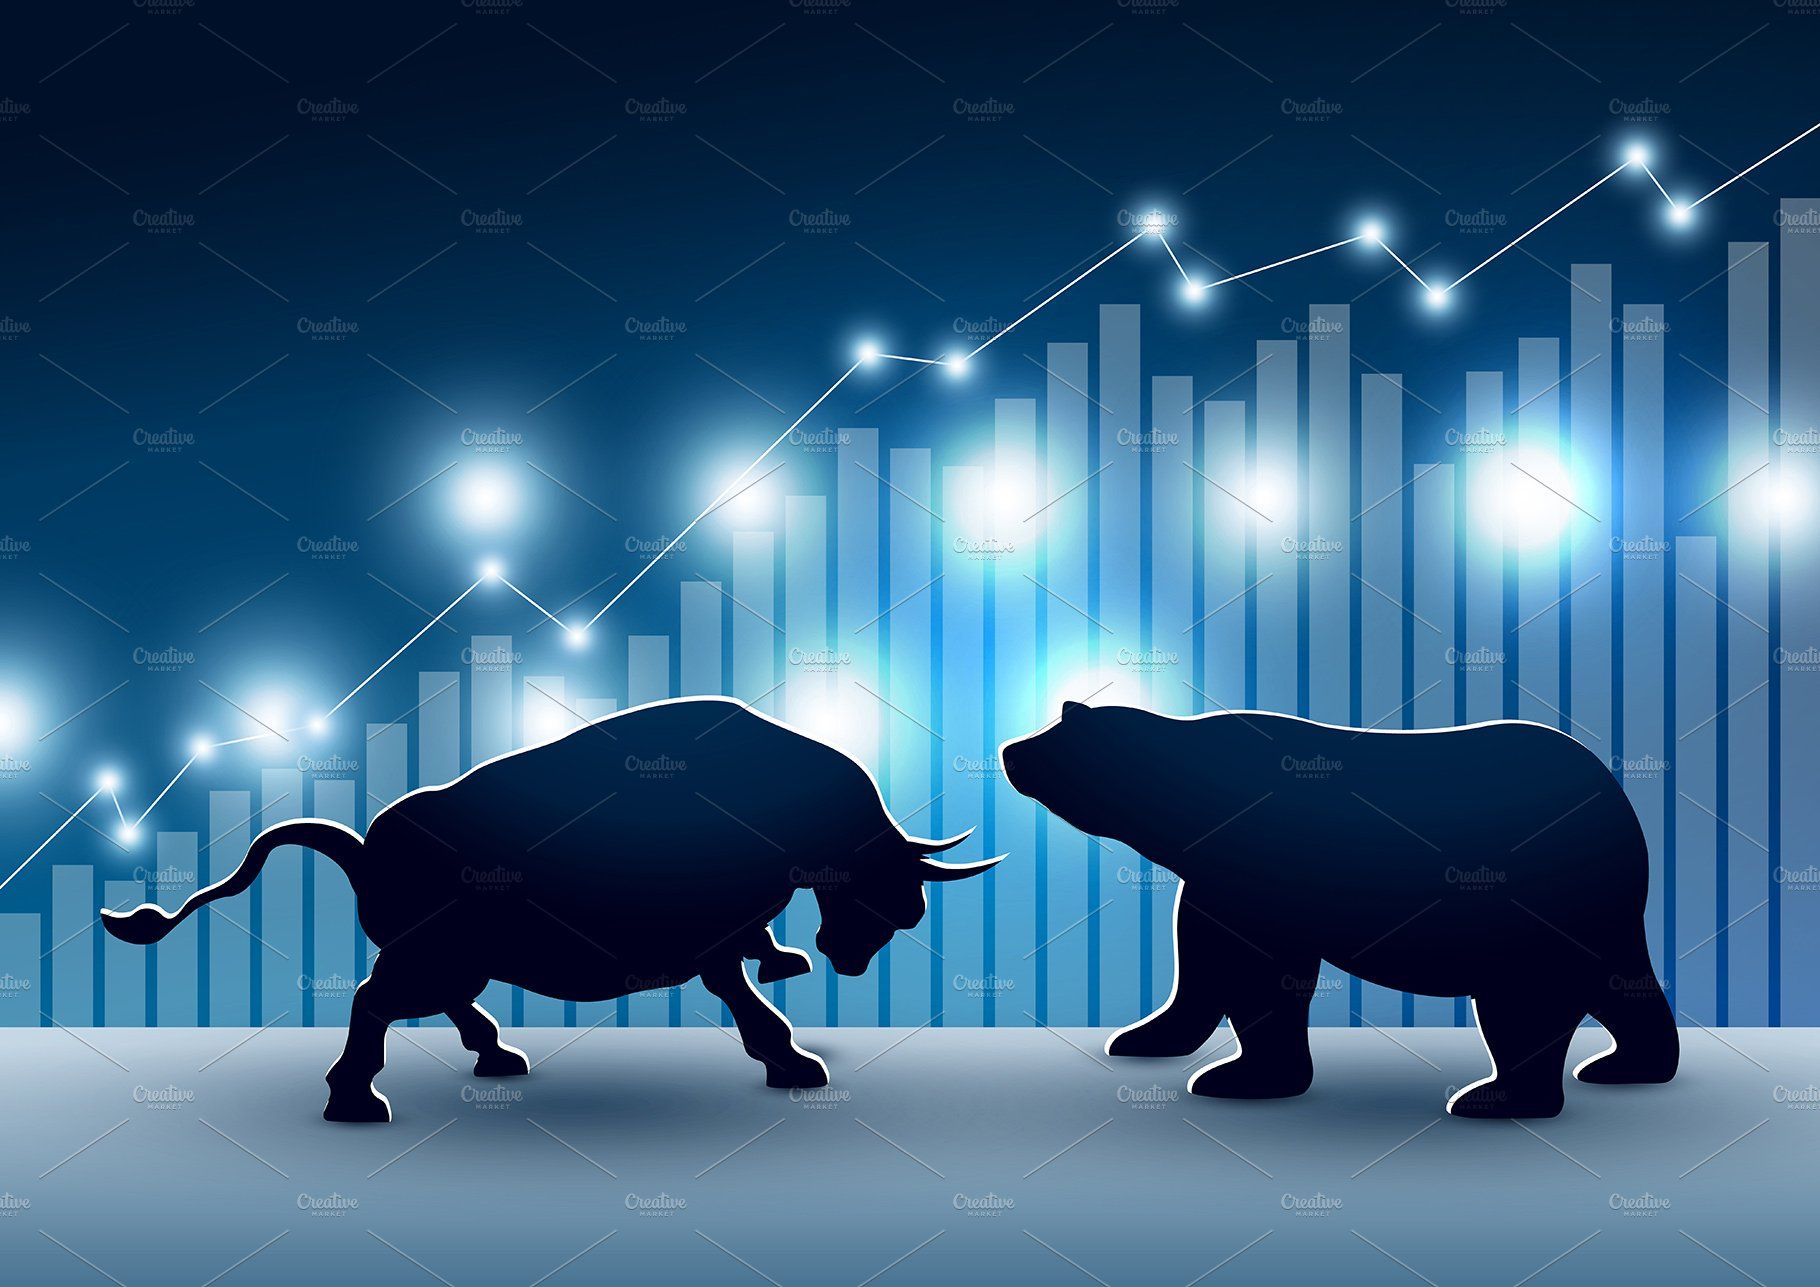 Stock market design of bull and bear. Market design, Stock market, Background design vector